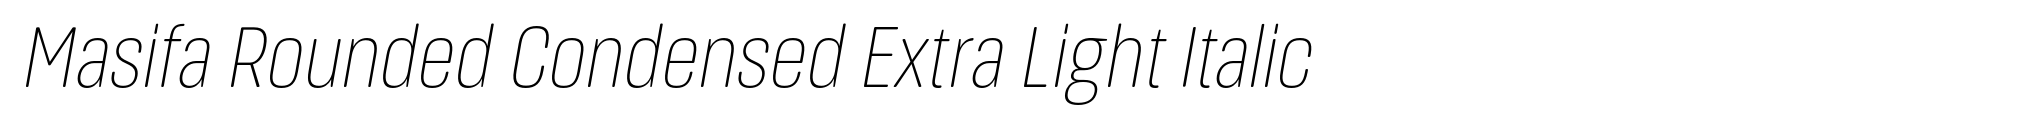 Masifa Rounded Condensed Extra Light Italic image